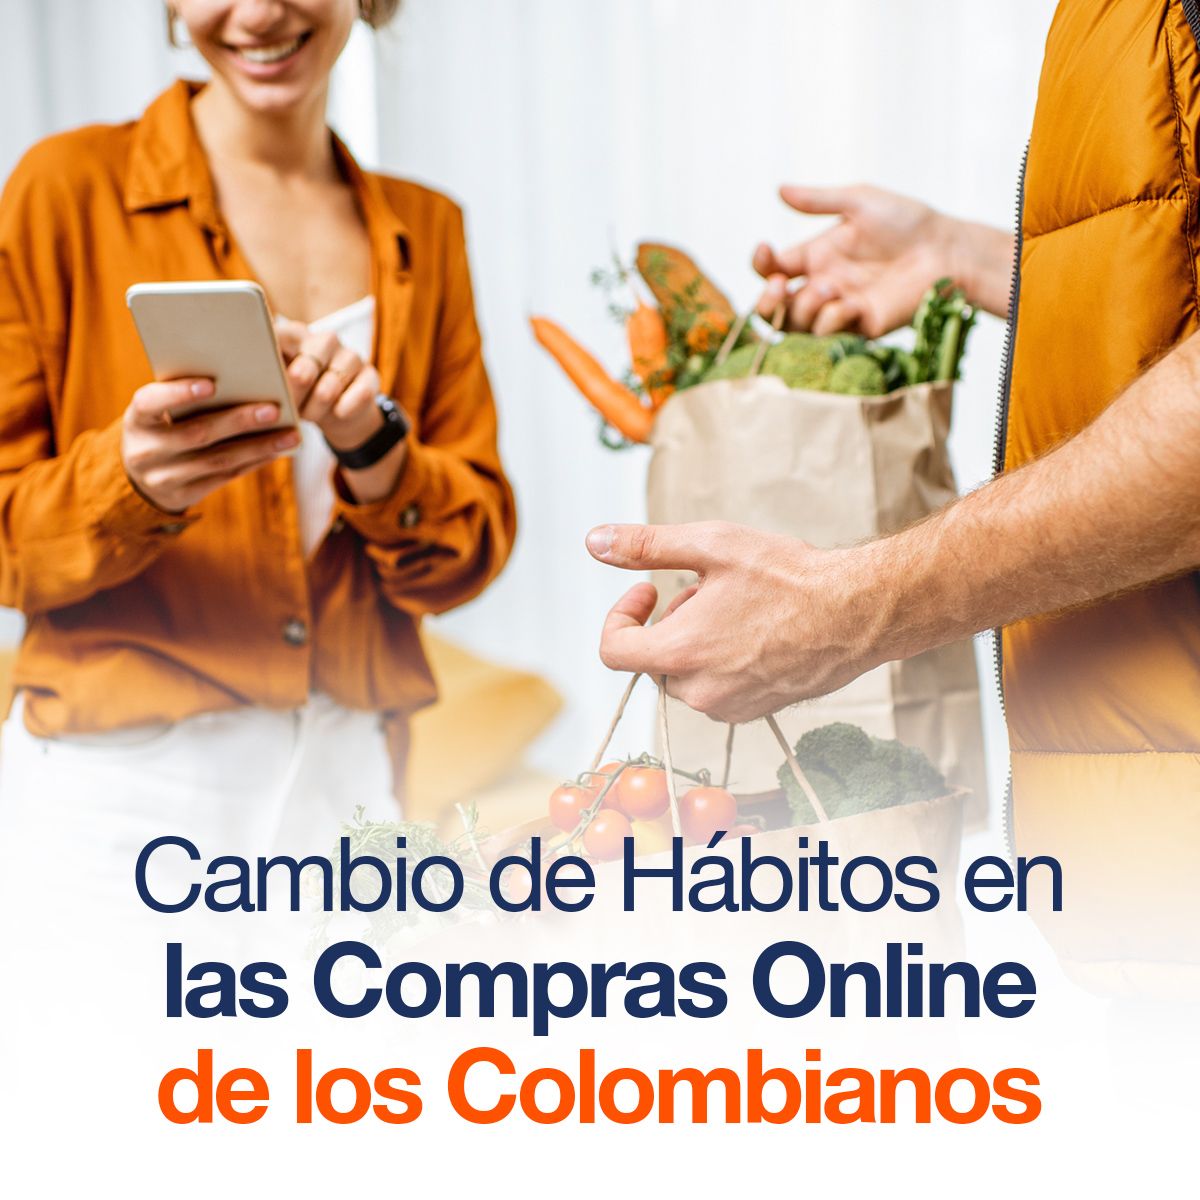 Cambio de Hábitos en las Compras Online de los Colombianos